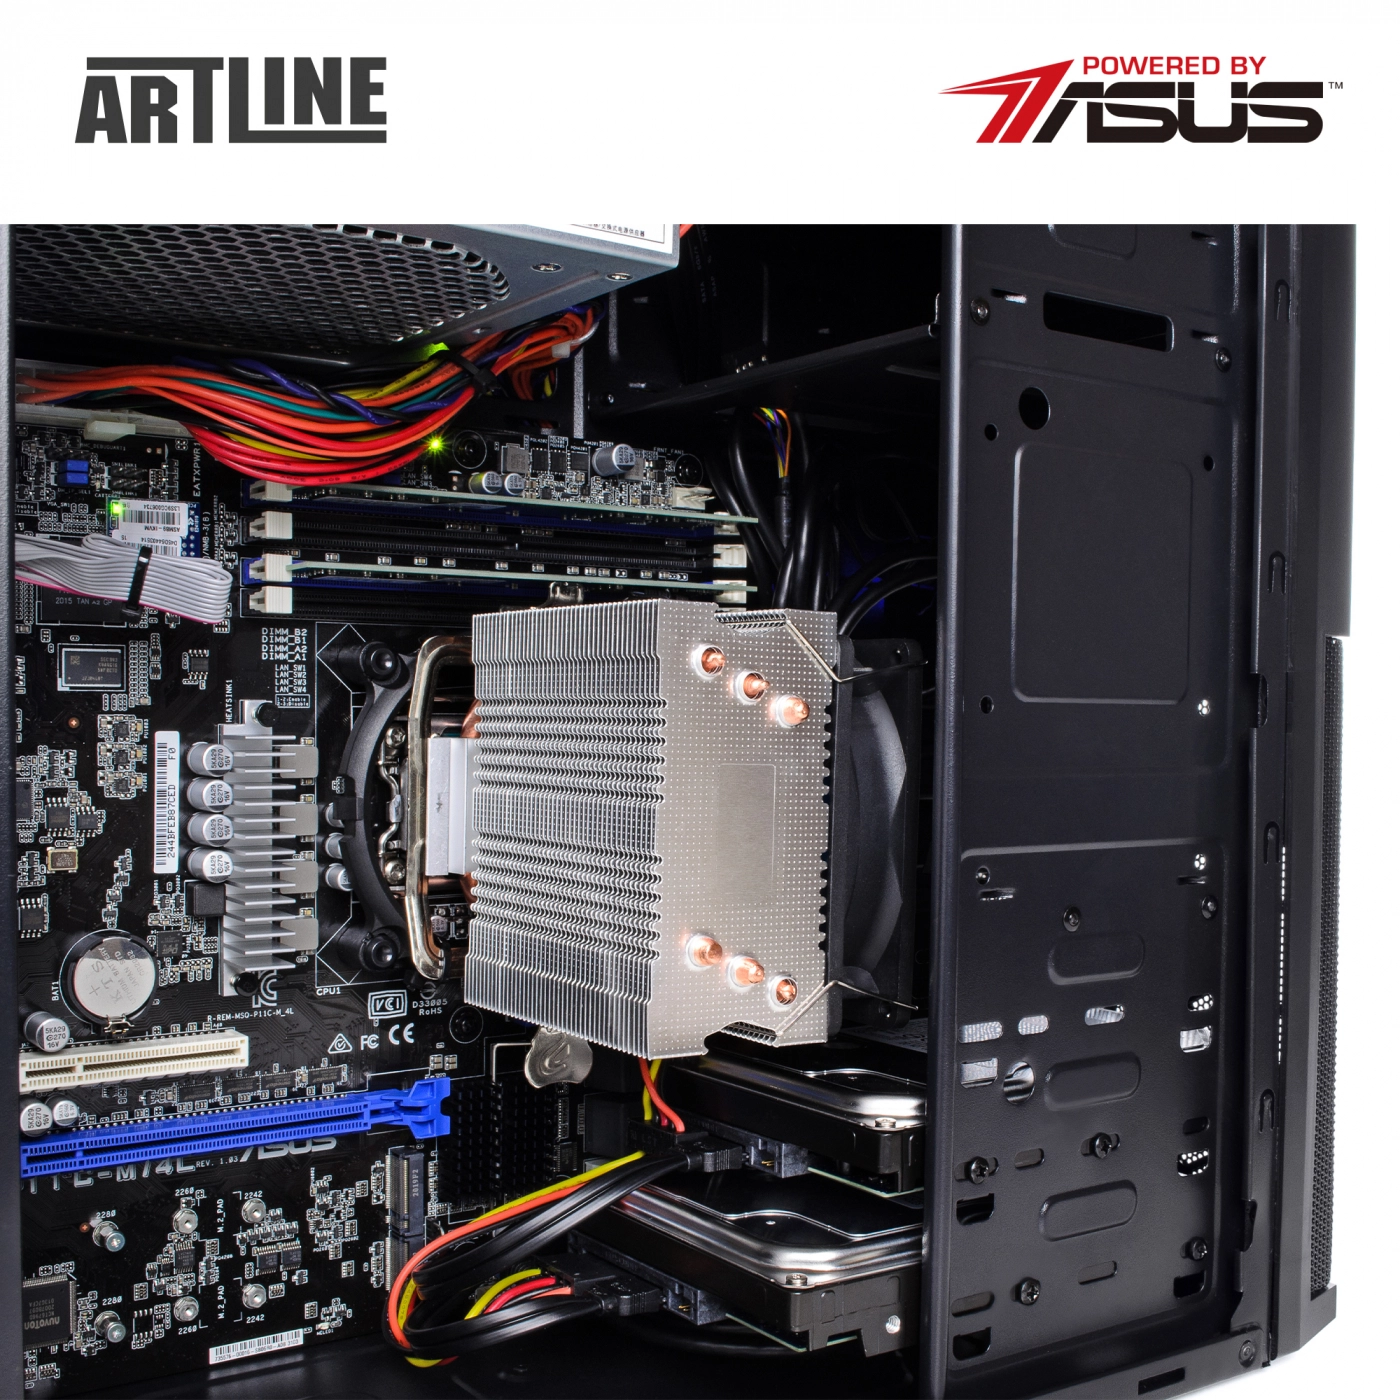 Купить Сервер ARTLINE Business T25v15 - фото 7